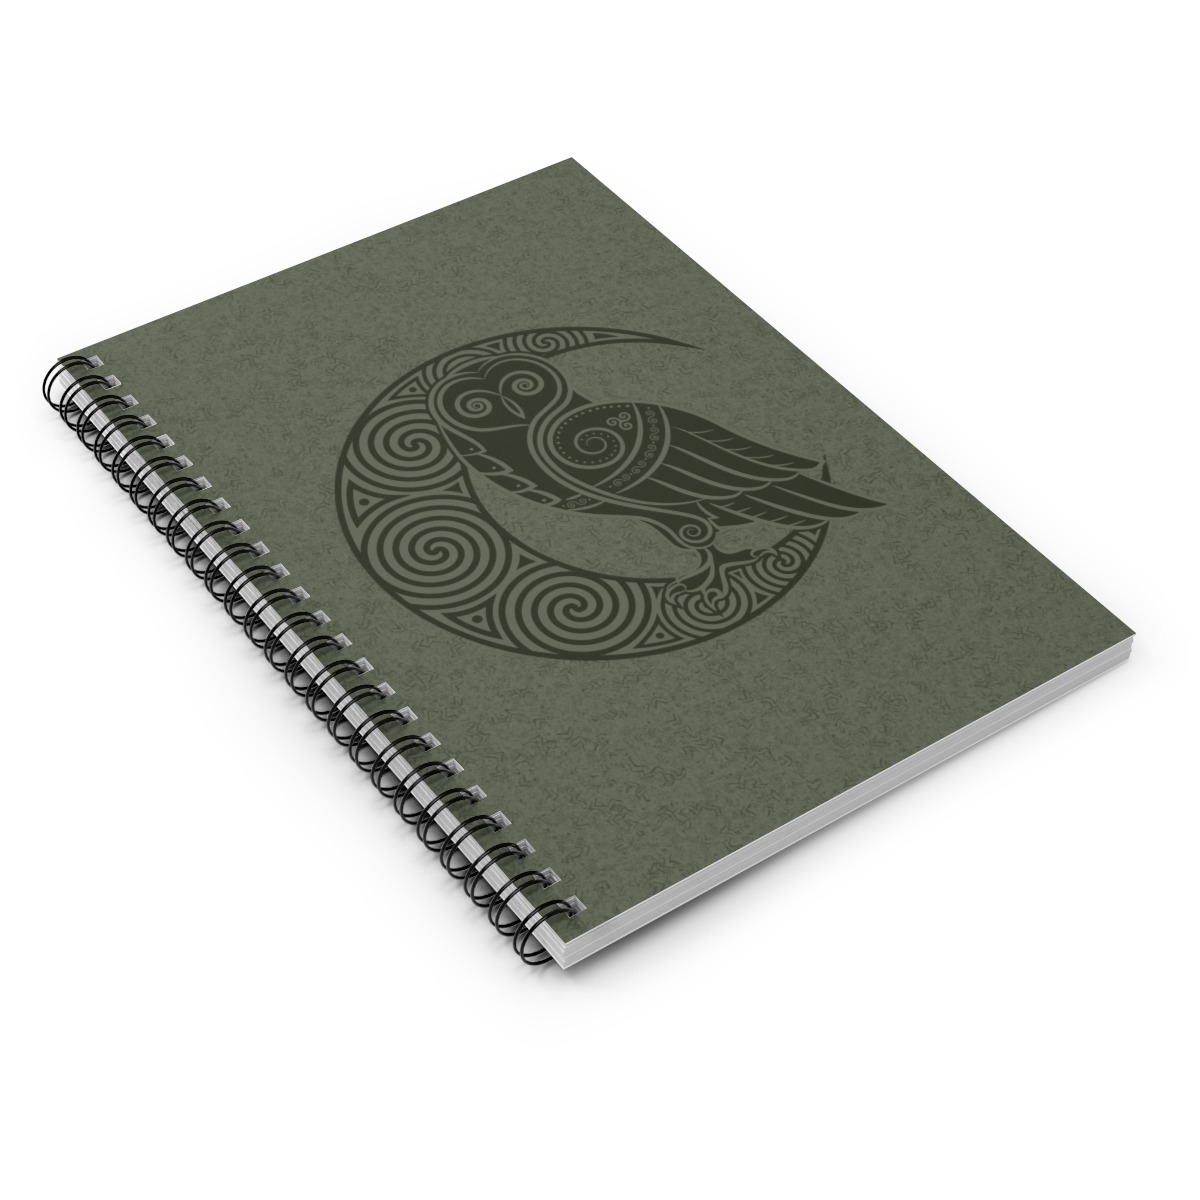 Green Owl Crescent Moon Spiral Notebook